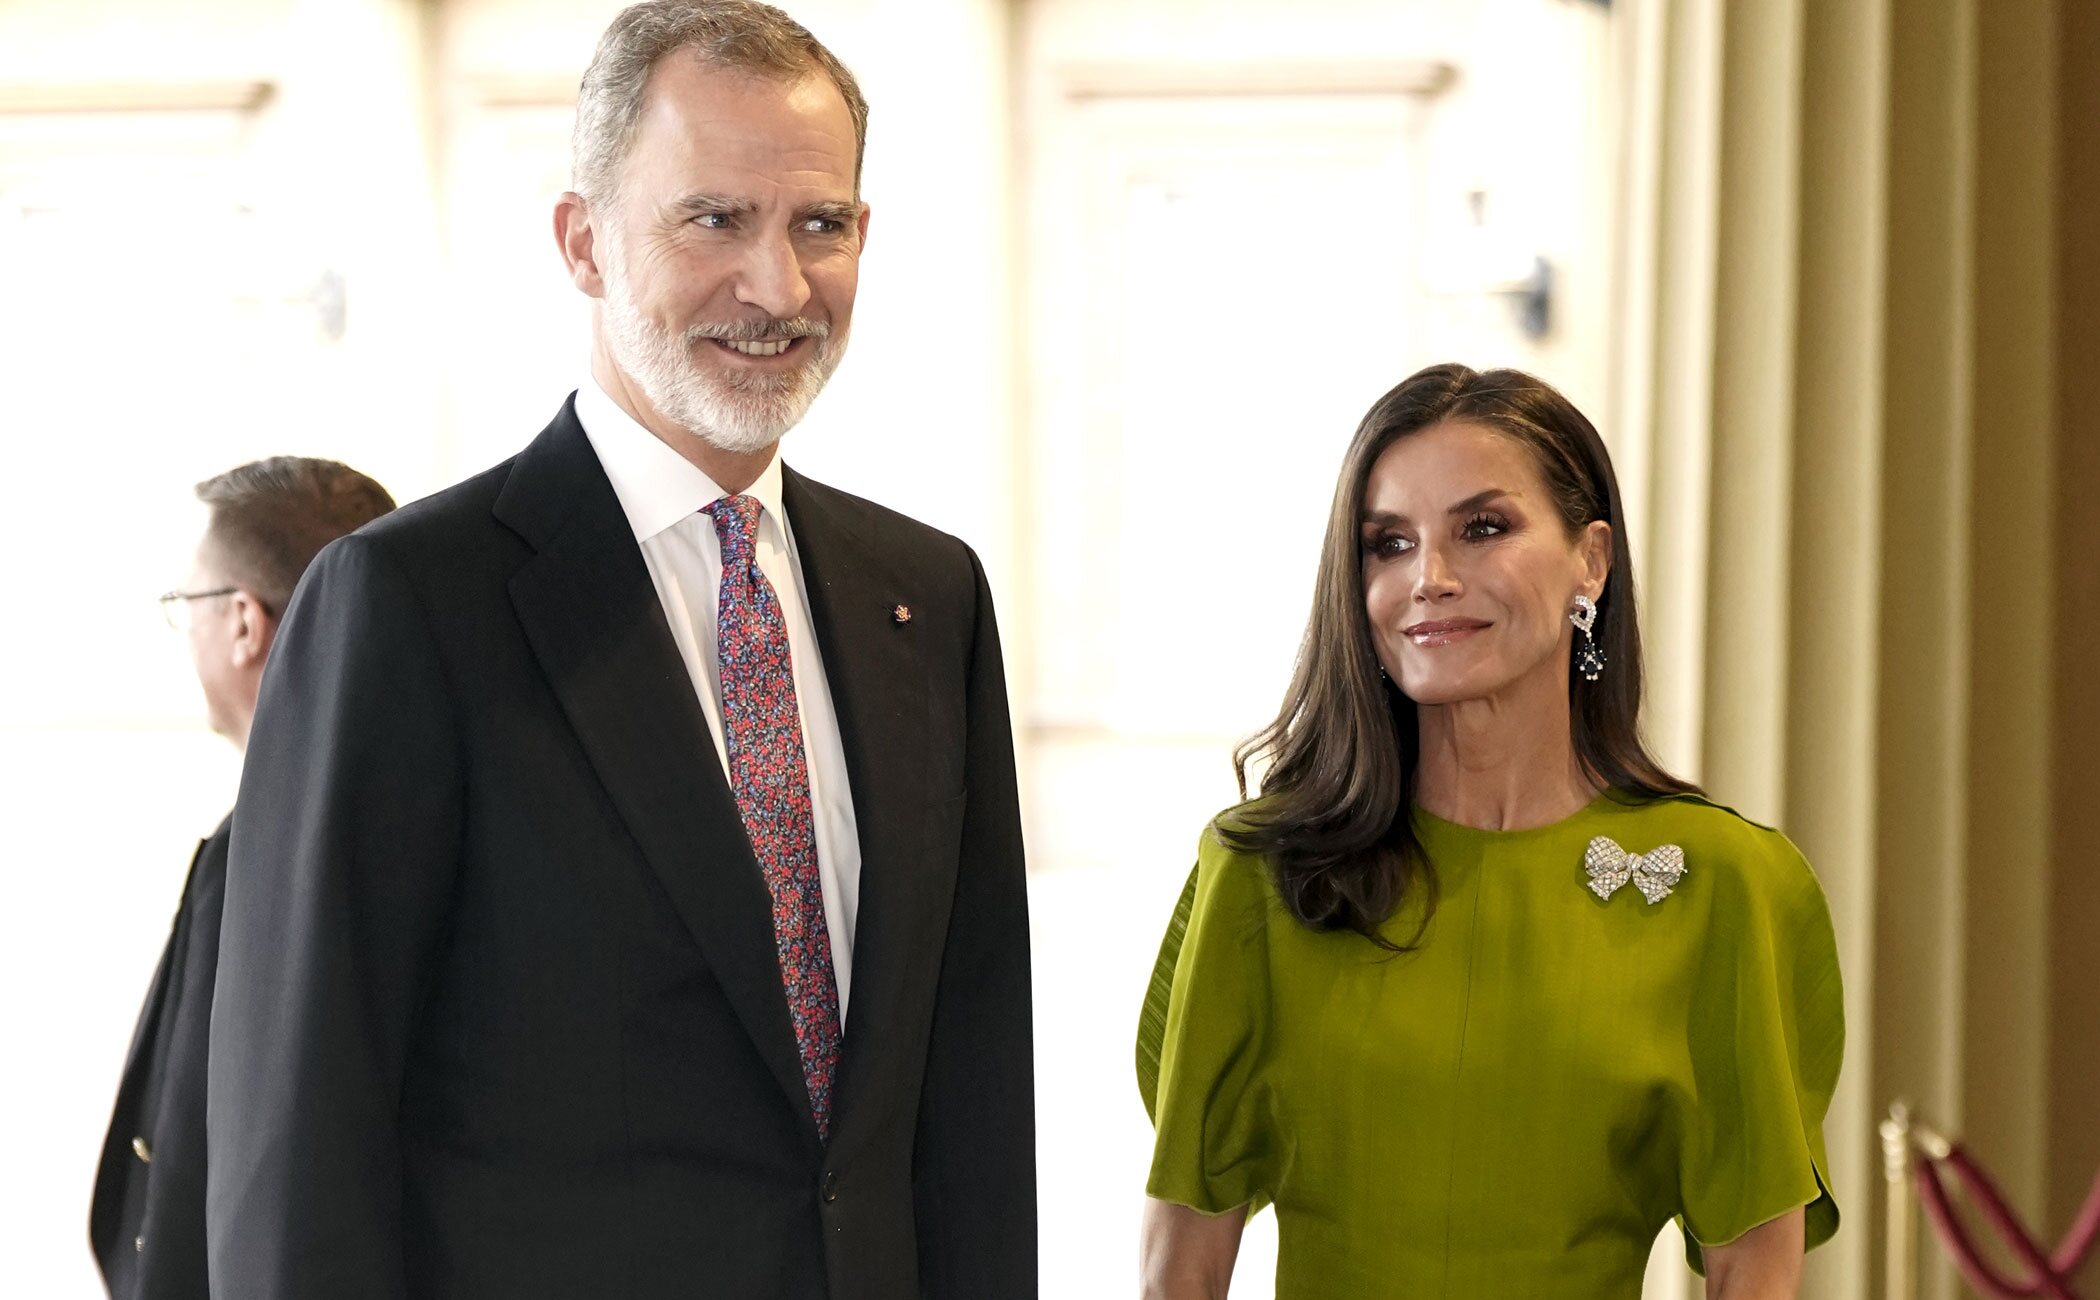 Cónclave de royals con presencia de los Reyes Felipe y Letizia en la recepción previa a la coronación de Carlos III